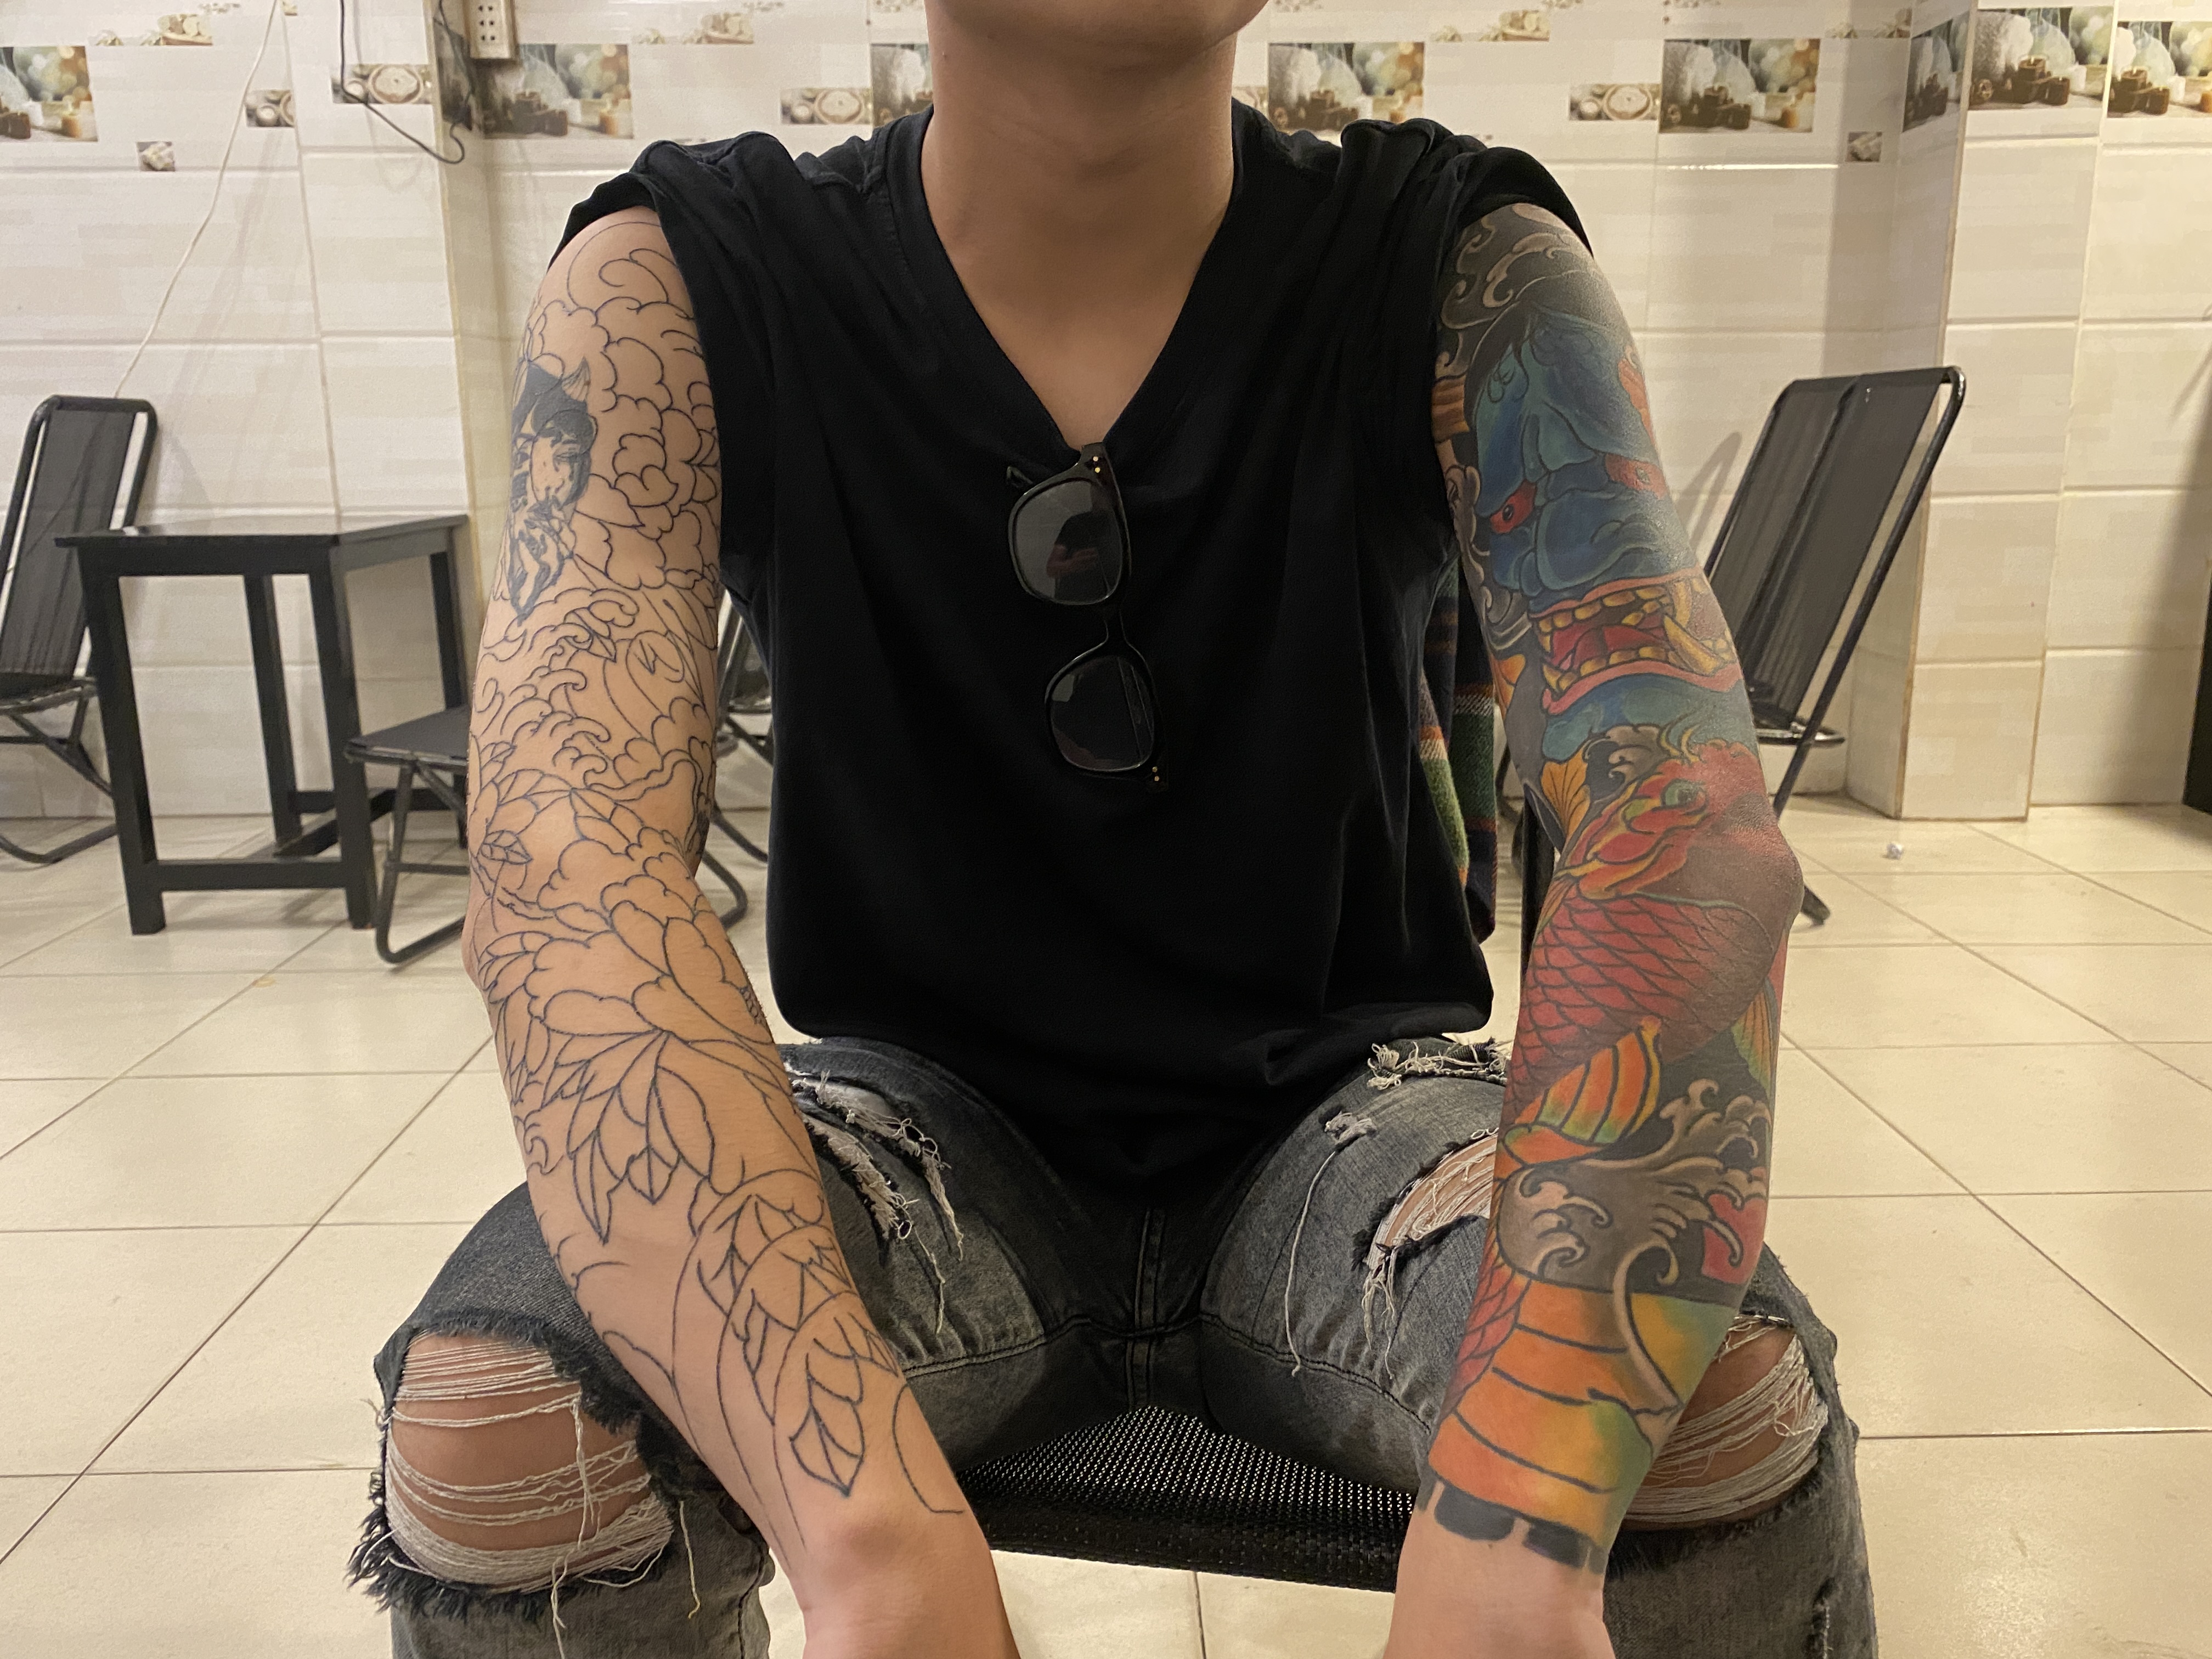 Tattoo Dragon  Xăm Hình Nghệ Thuật  Xăm hình không xấu Hình xăm xấu thì  mới xấu Qua ad thì chỉ có đẹp   Facebook